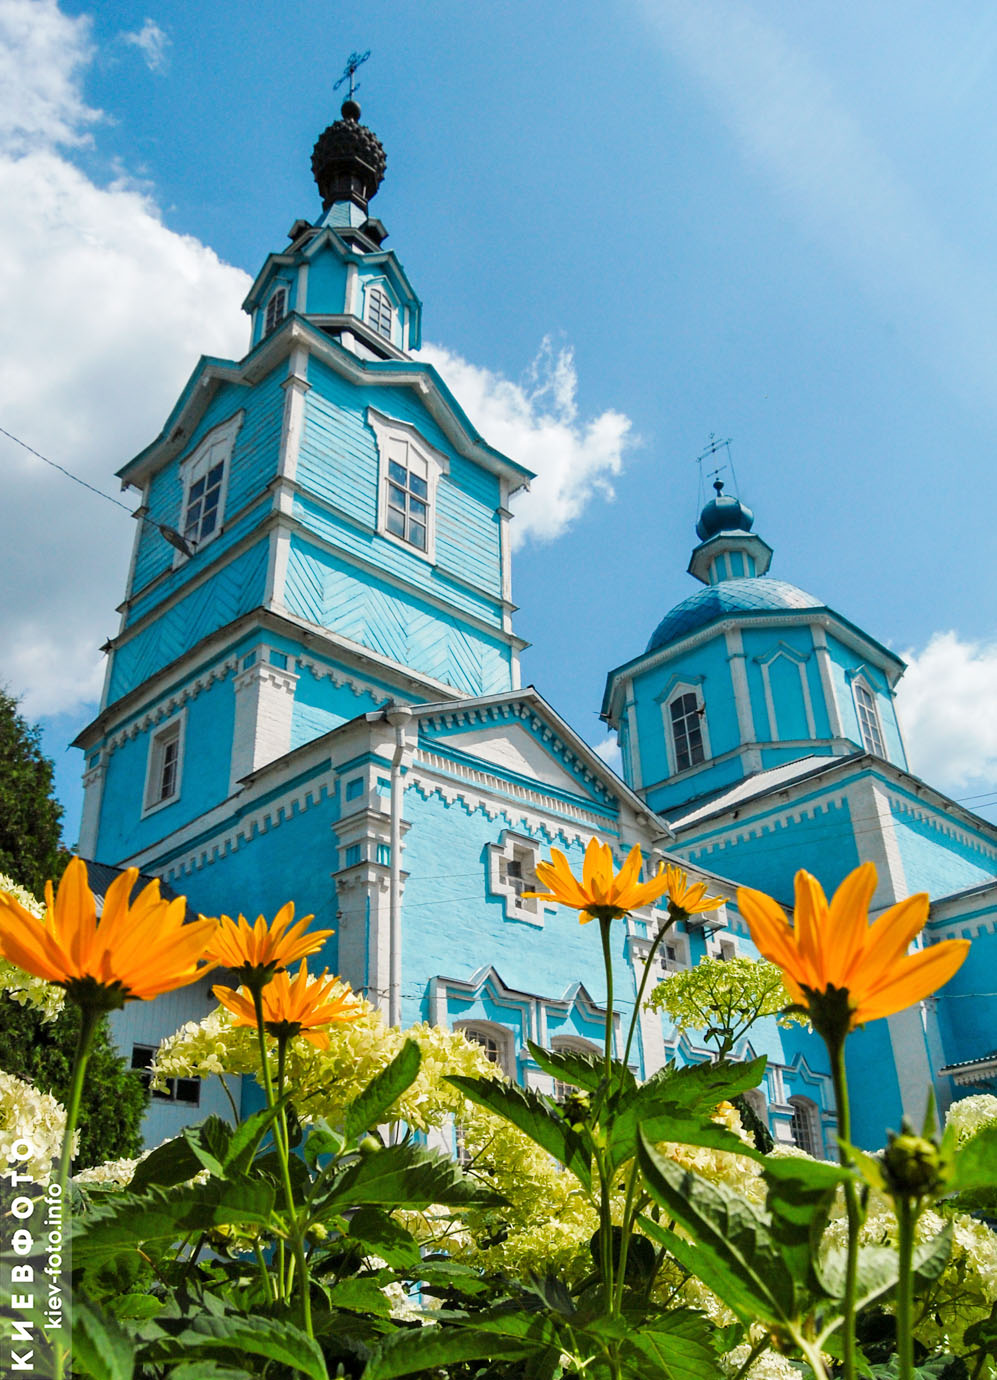 Свято-Михайловская церковь в Боярке